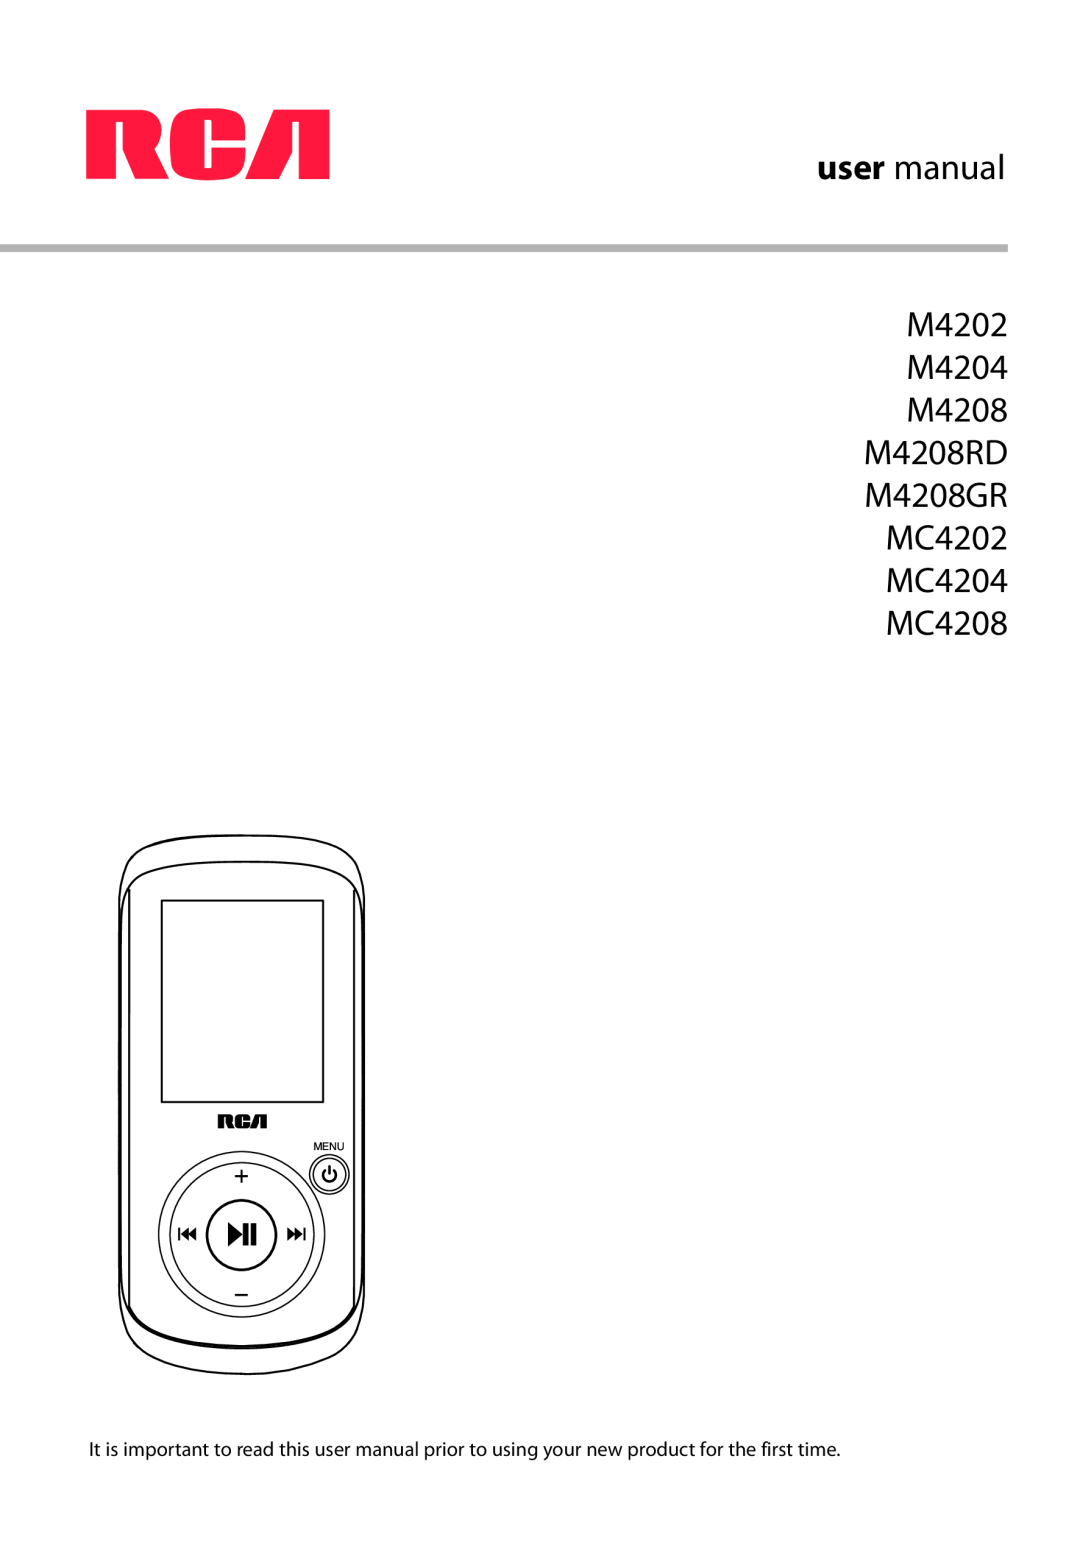 RCA M4202, M4208RD, MC4202, MC4204, MC4208 user manual 